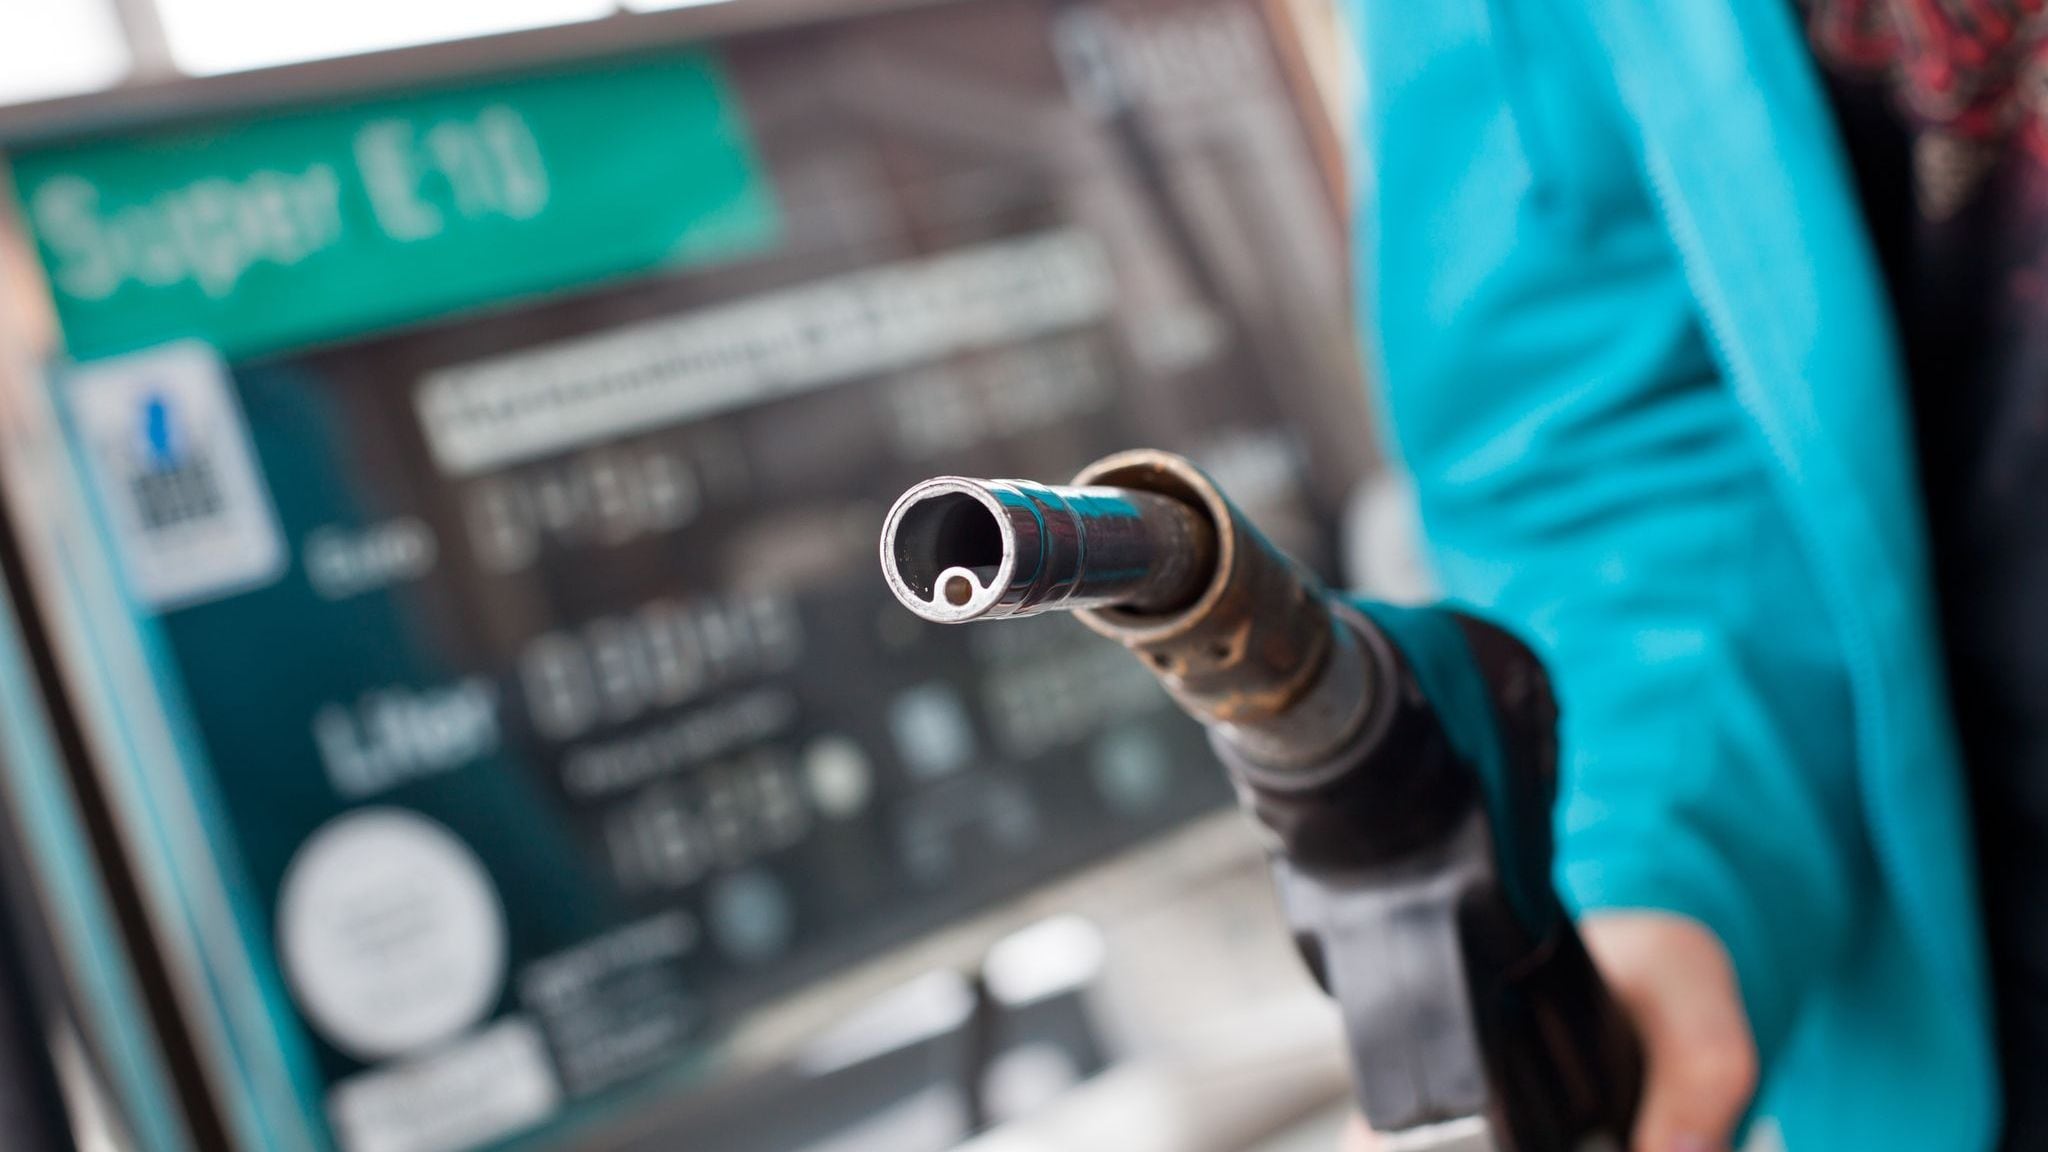 ARCHIVO - Ante la amenaza del surtidor de combustible, con precios en alza, es conveniente extremar los recursos para reducir el consumo del auto. Foto: Daniel Karmann/dpa